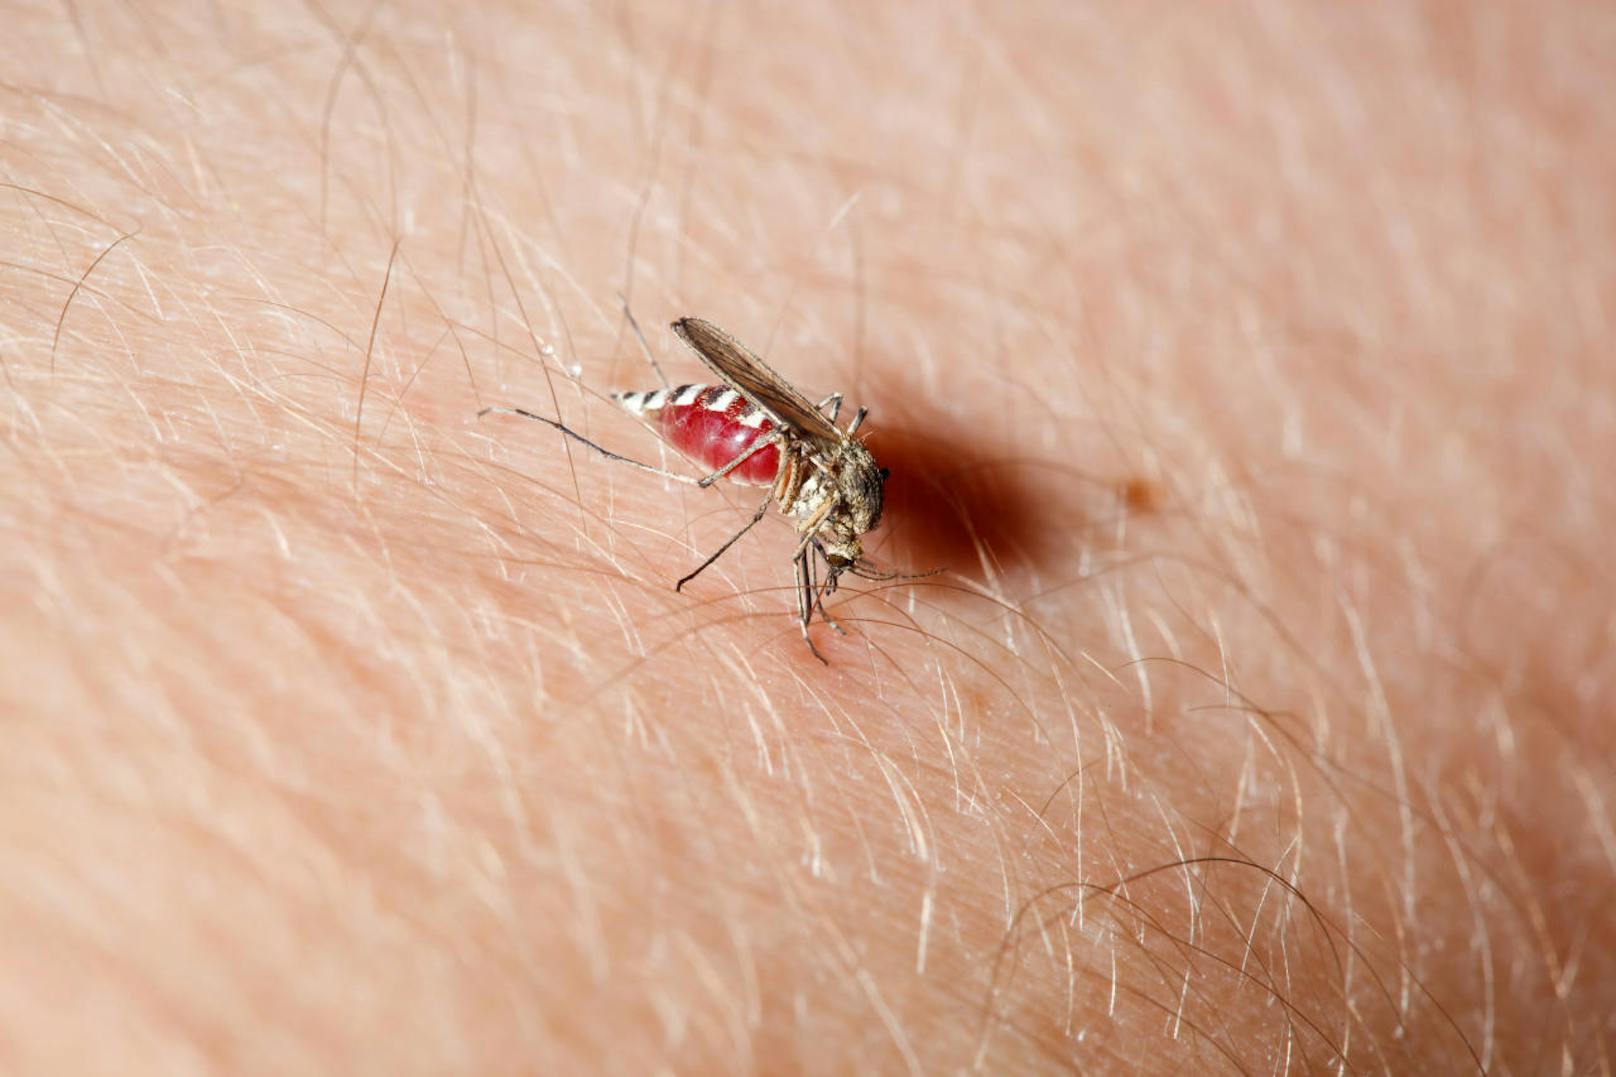 Das Problem: Mit dem Speichel gelangen auch allerlei Krankheitserreger in unseren Körper. Davon hat die Mücke selber nichts. Sie ist nur der Überträger eines Erregers, den sie zuvor bei einem anderen Menschen oder einem Tier aufgeschnappt hatte.